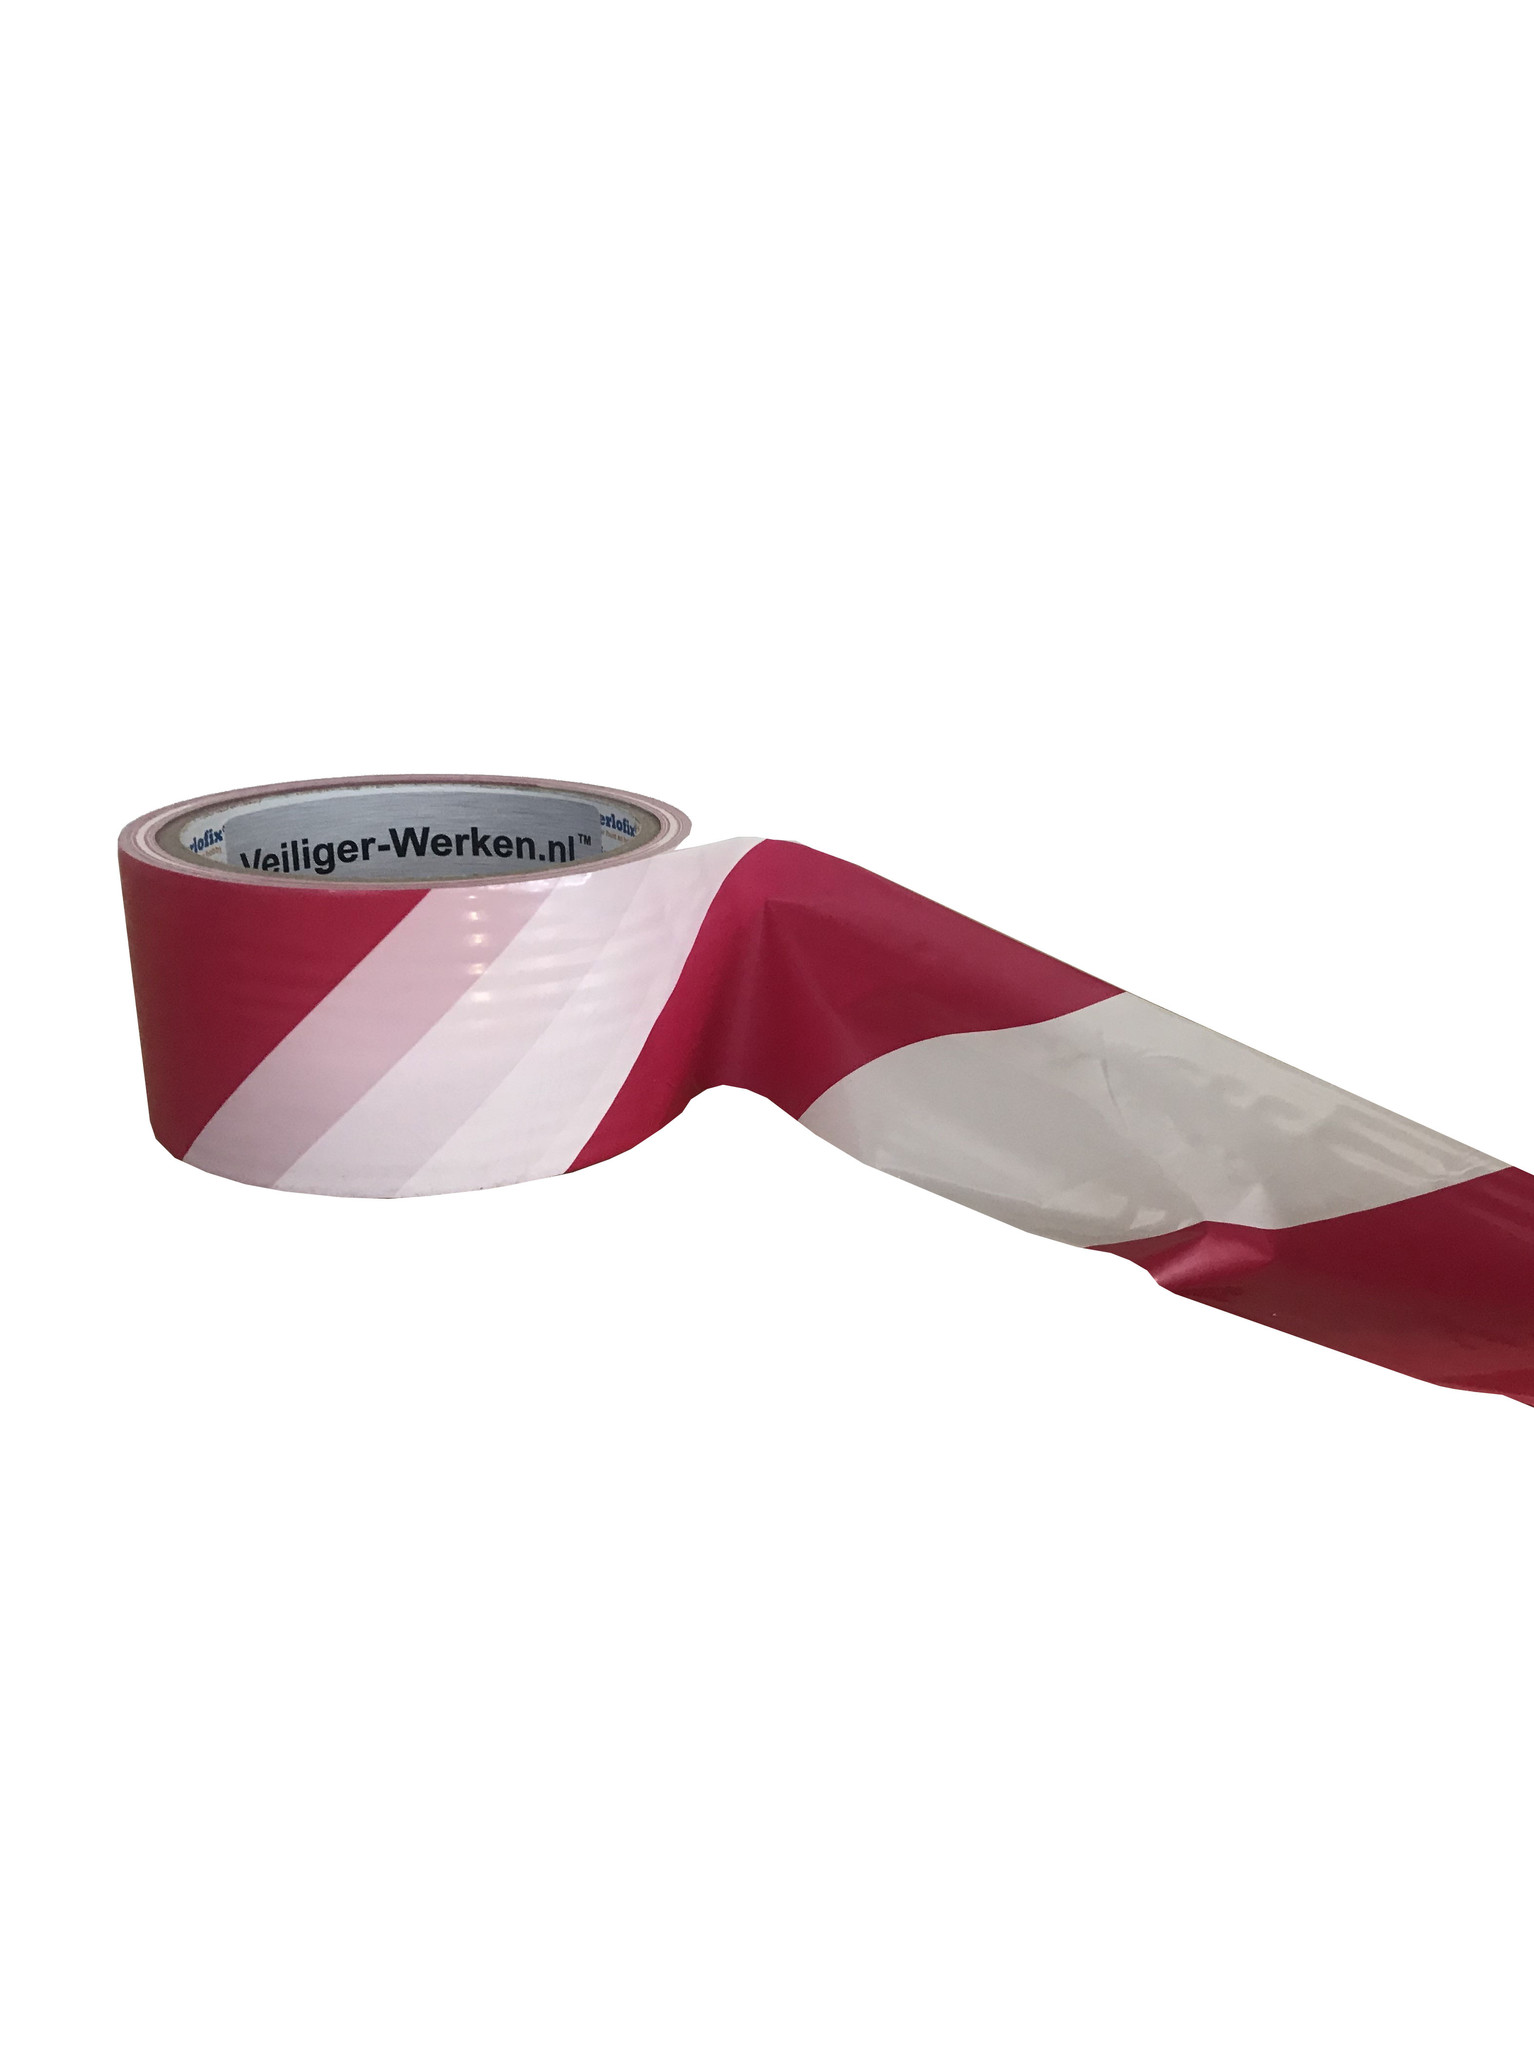 monster Sportschool tweedehands Afzetlint rood-wit, rol 50mm/50m. Markeer snel en veilig uw looproutes -  Locker Concept